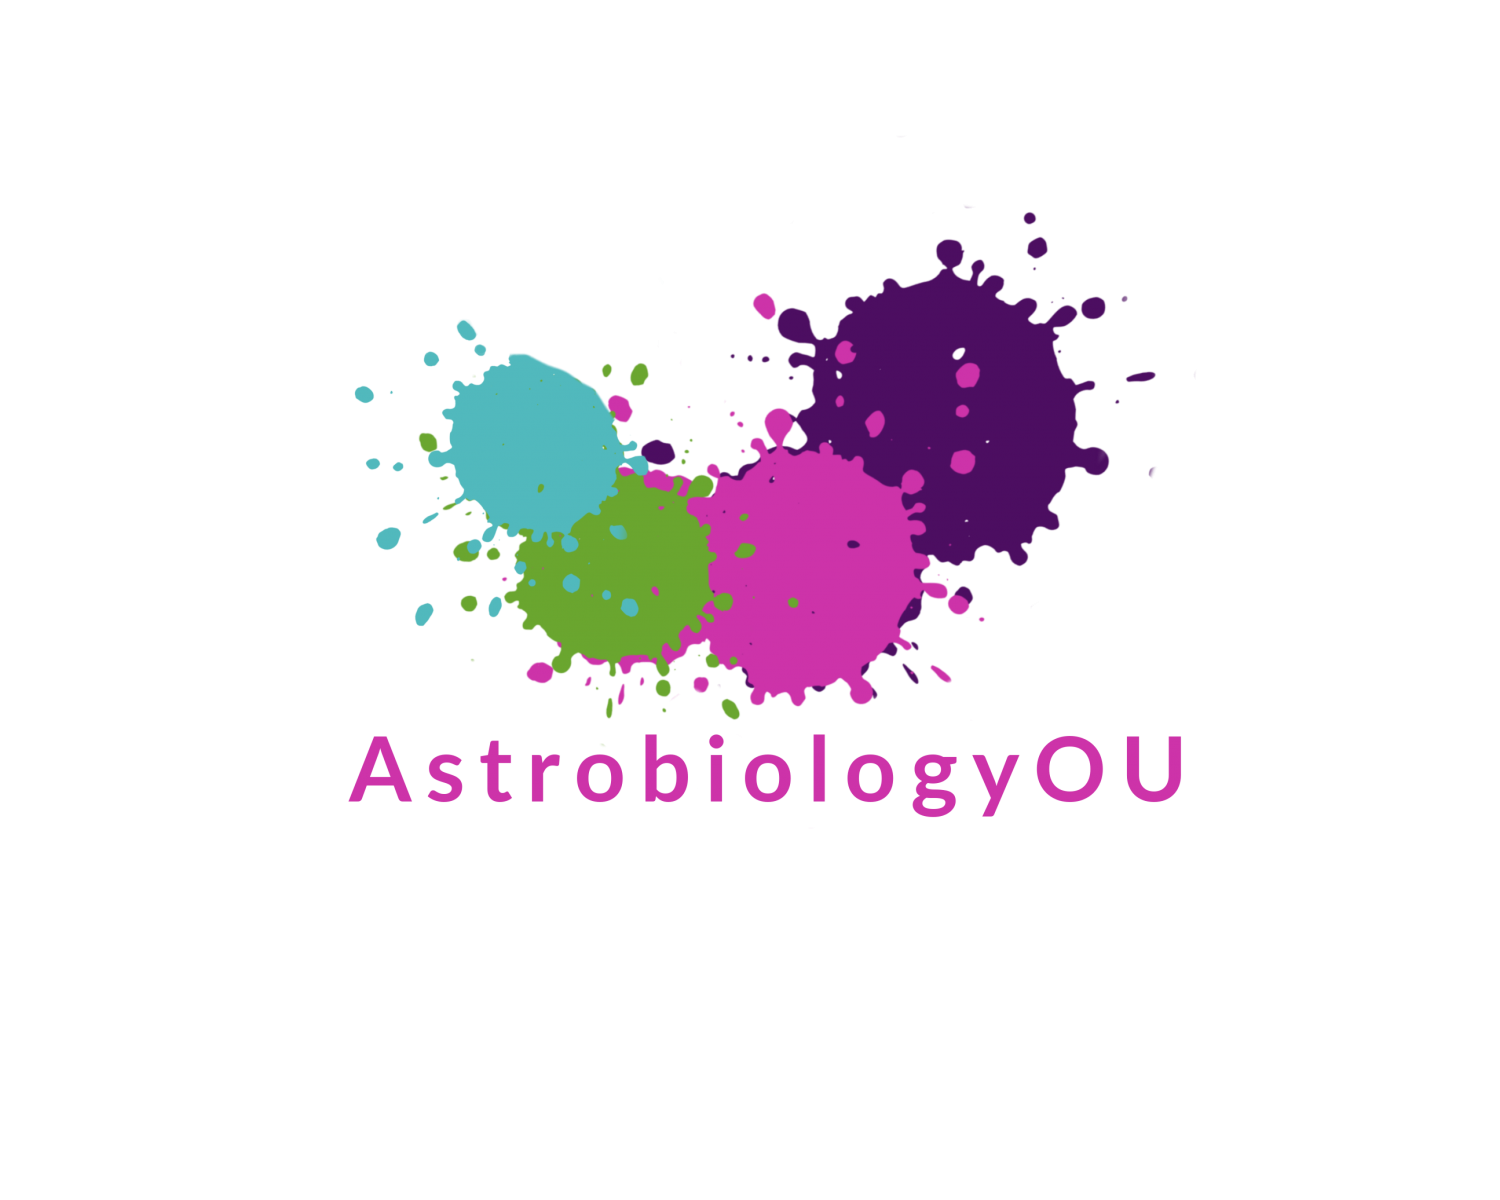 AstrobiologyOU